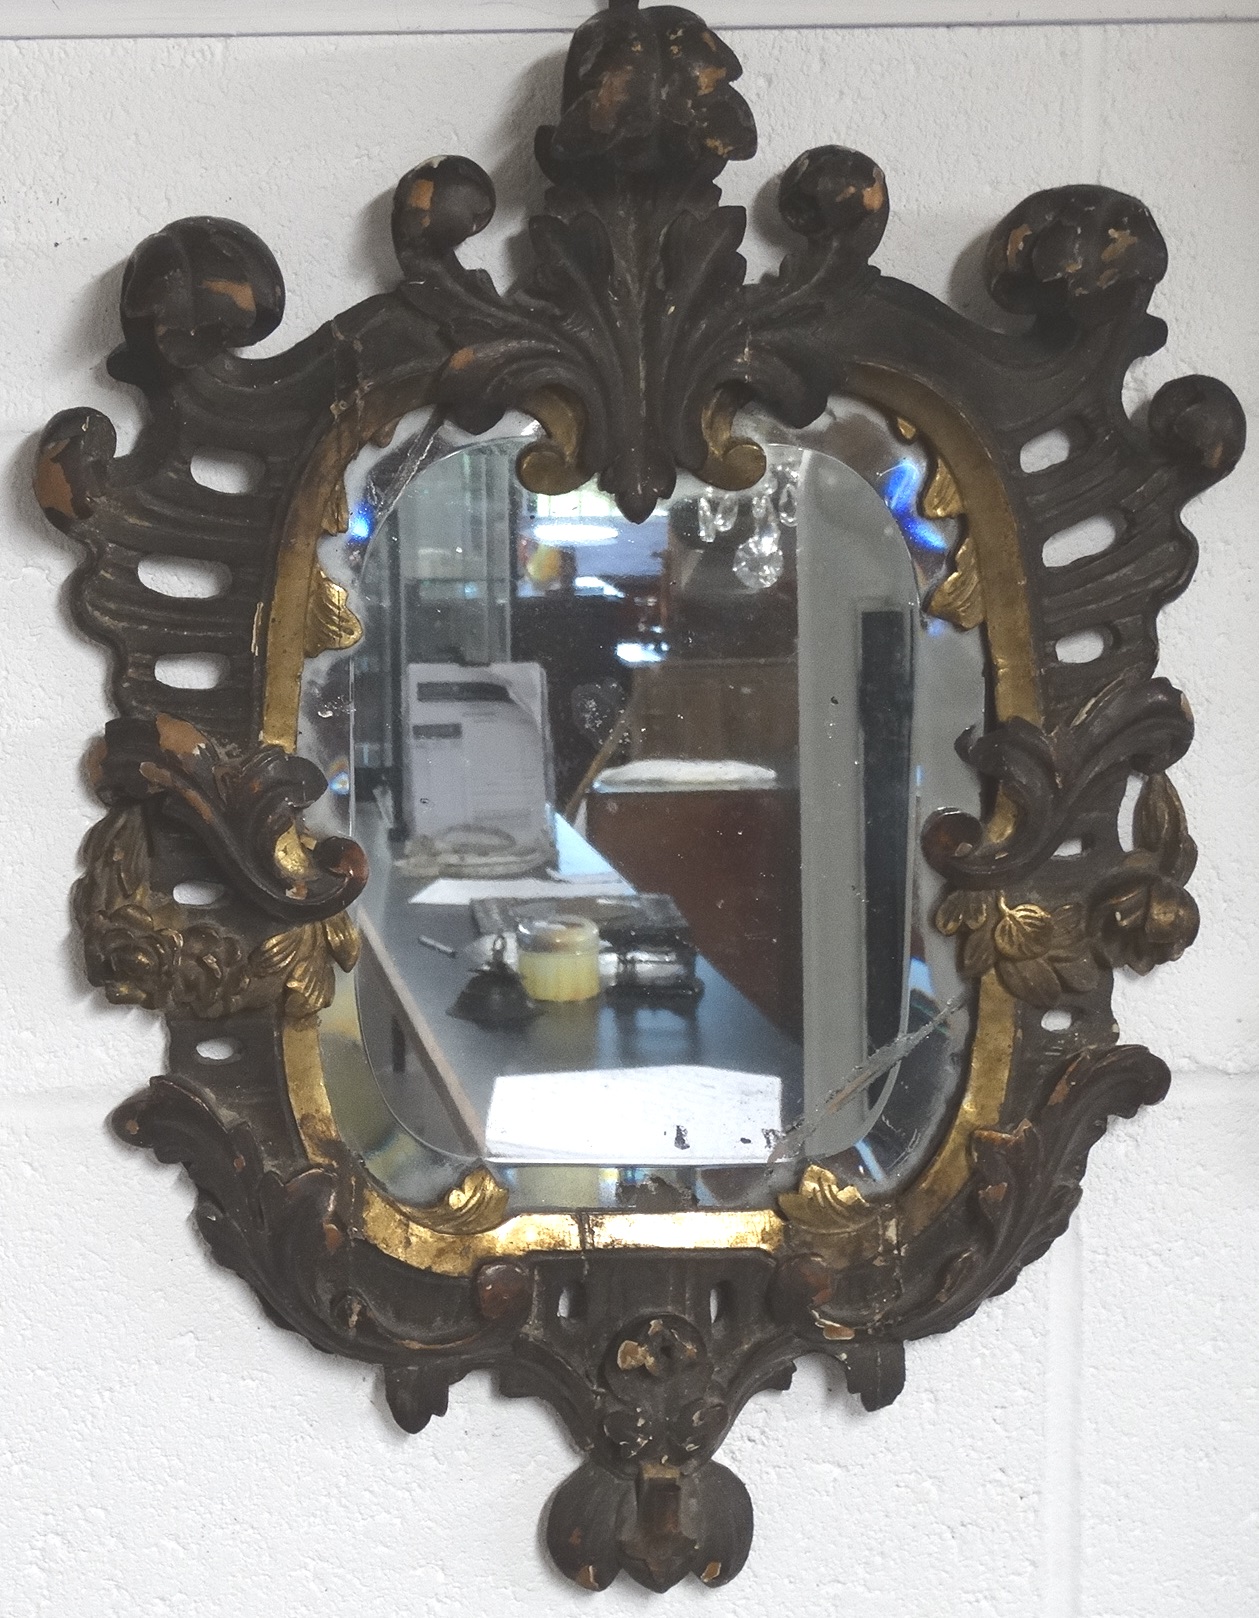 Early gilt framed mirror